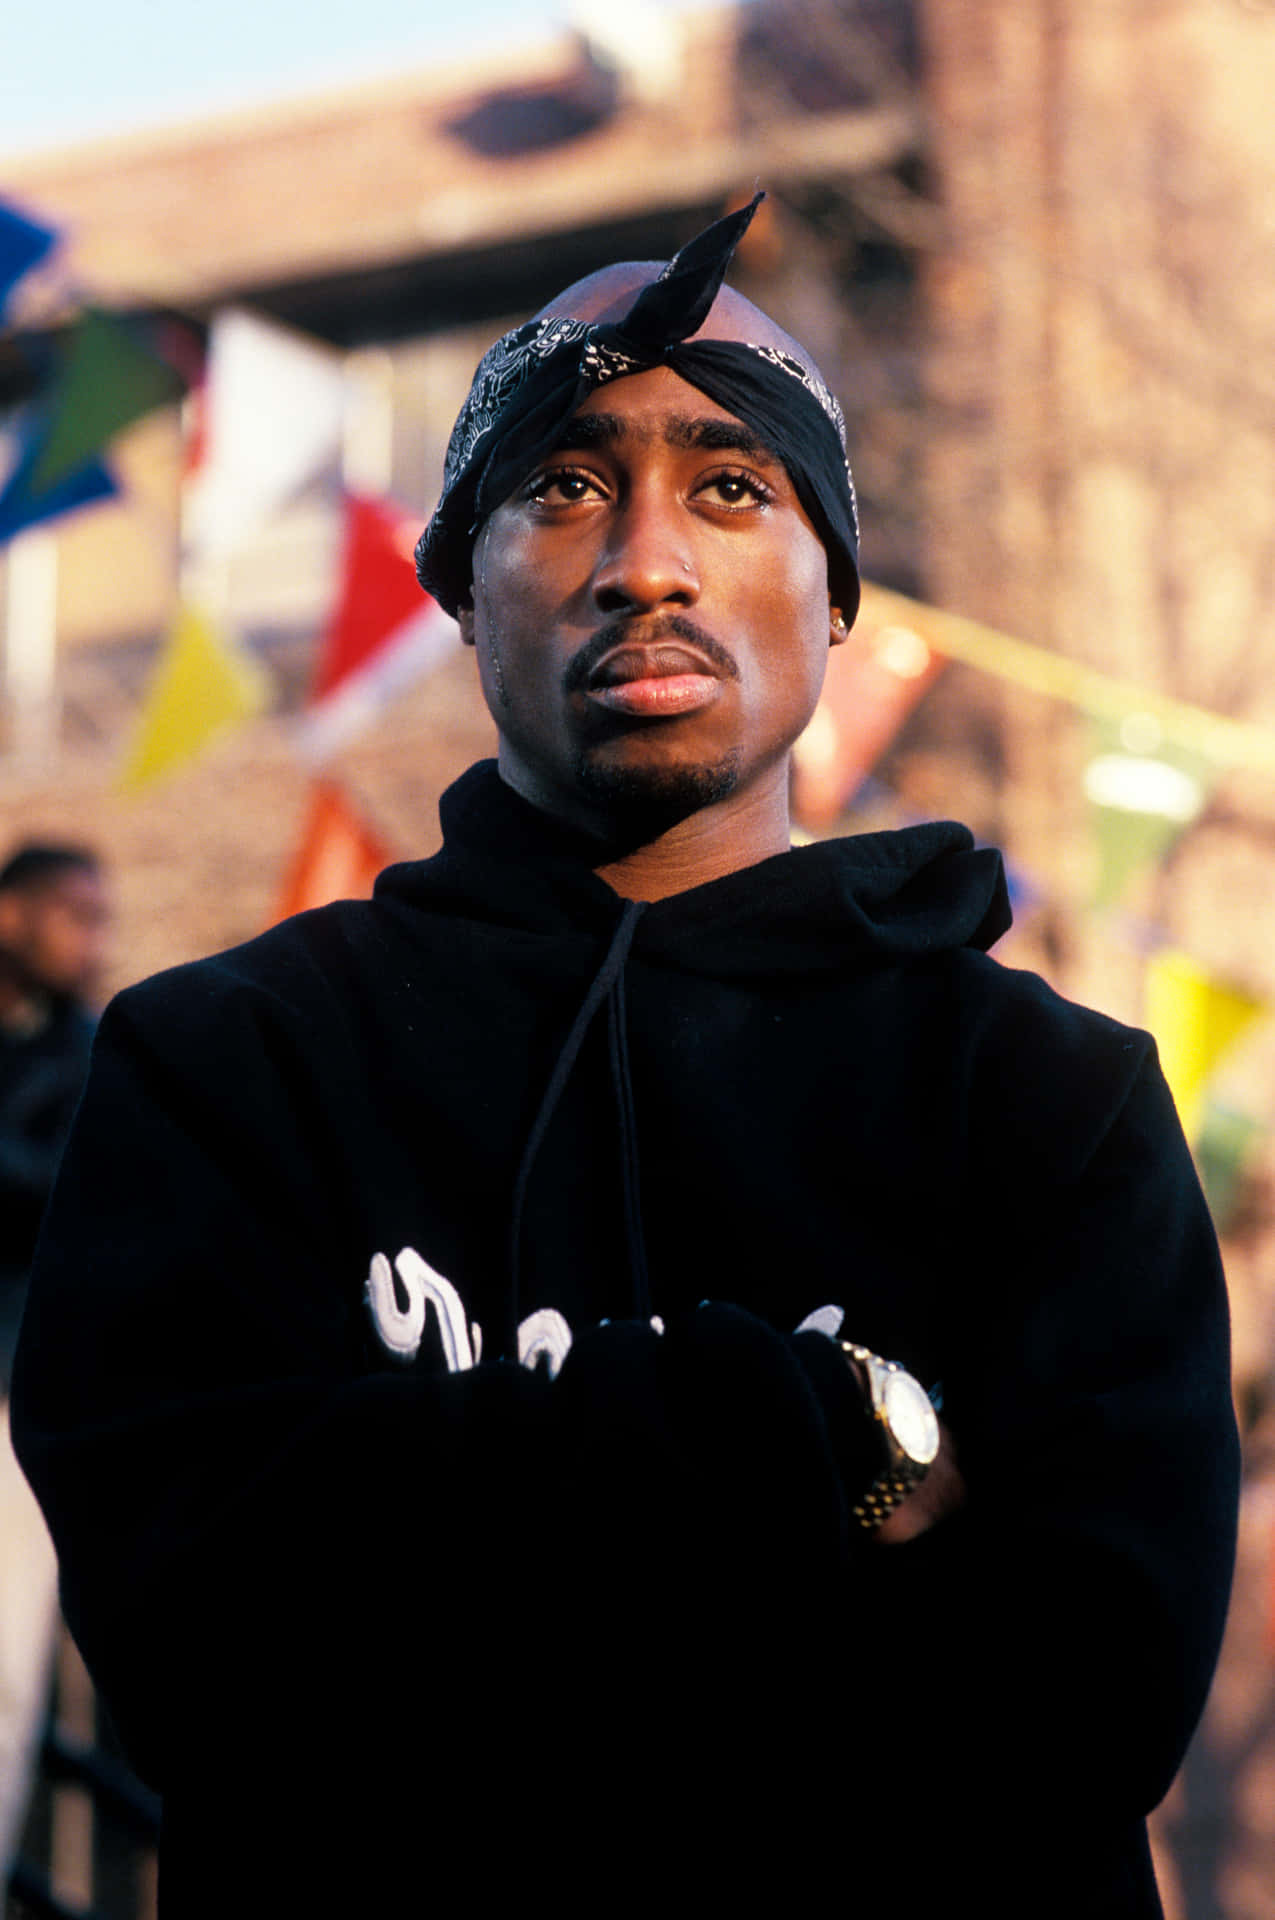 Beschreibungein Klassisches Schwarz-weiß Bild Des Verstorbenen, Großartigen Hip-hop-icons Tupac Shakur.